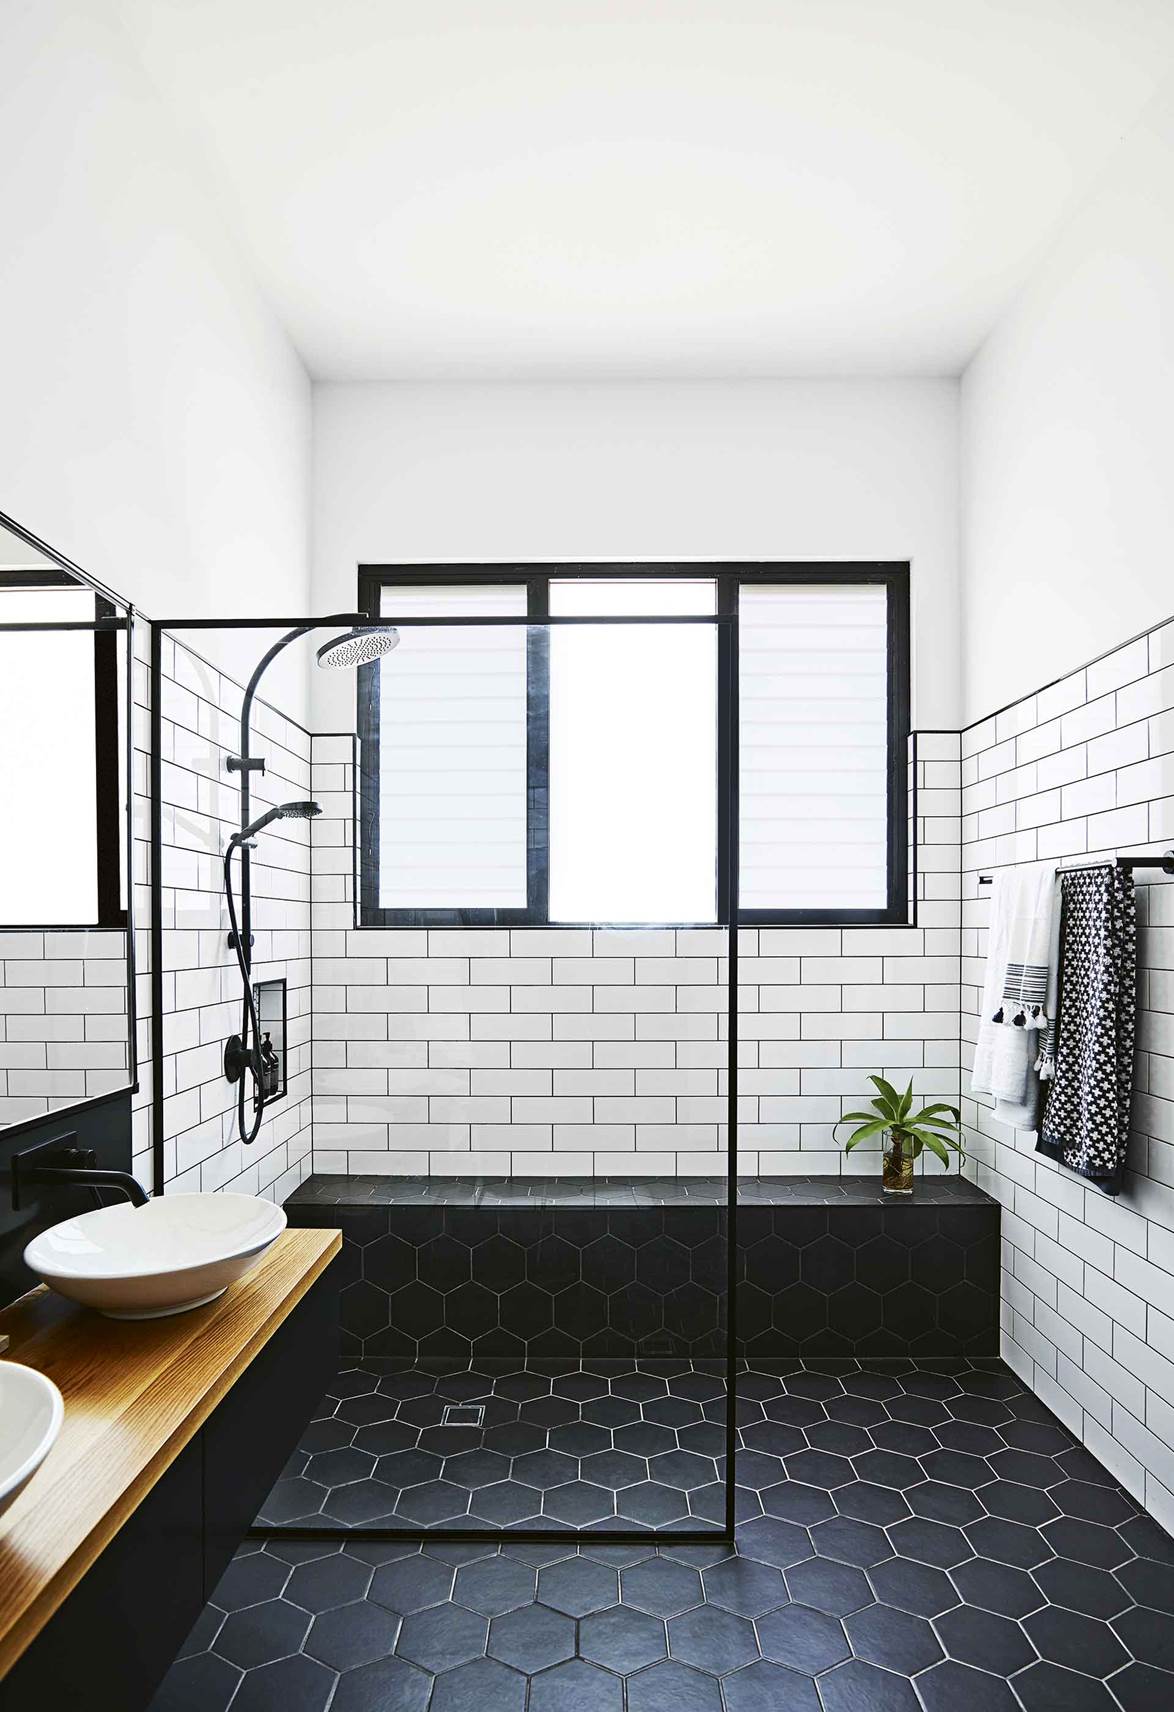 17 căn phòng tắm đen trắng dùng bao nhiêu năm vẫn thấy ưng mắt - Ảnh 1.